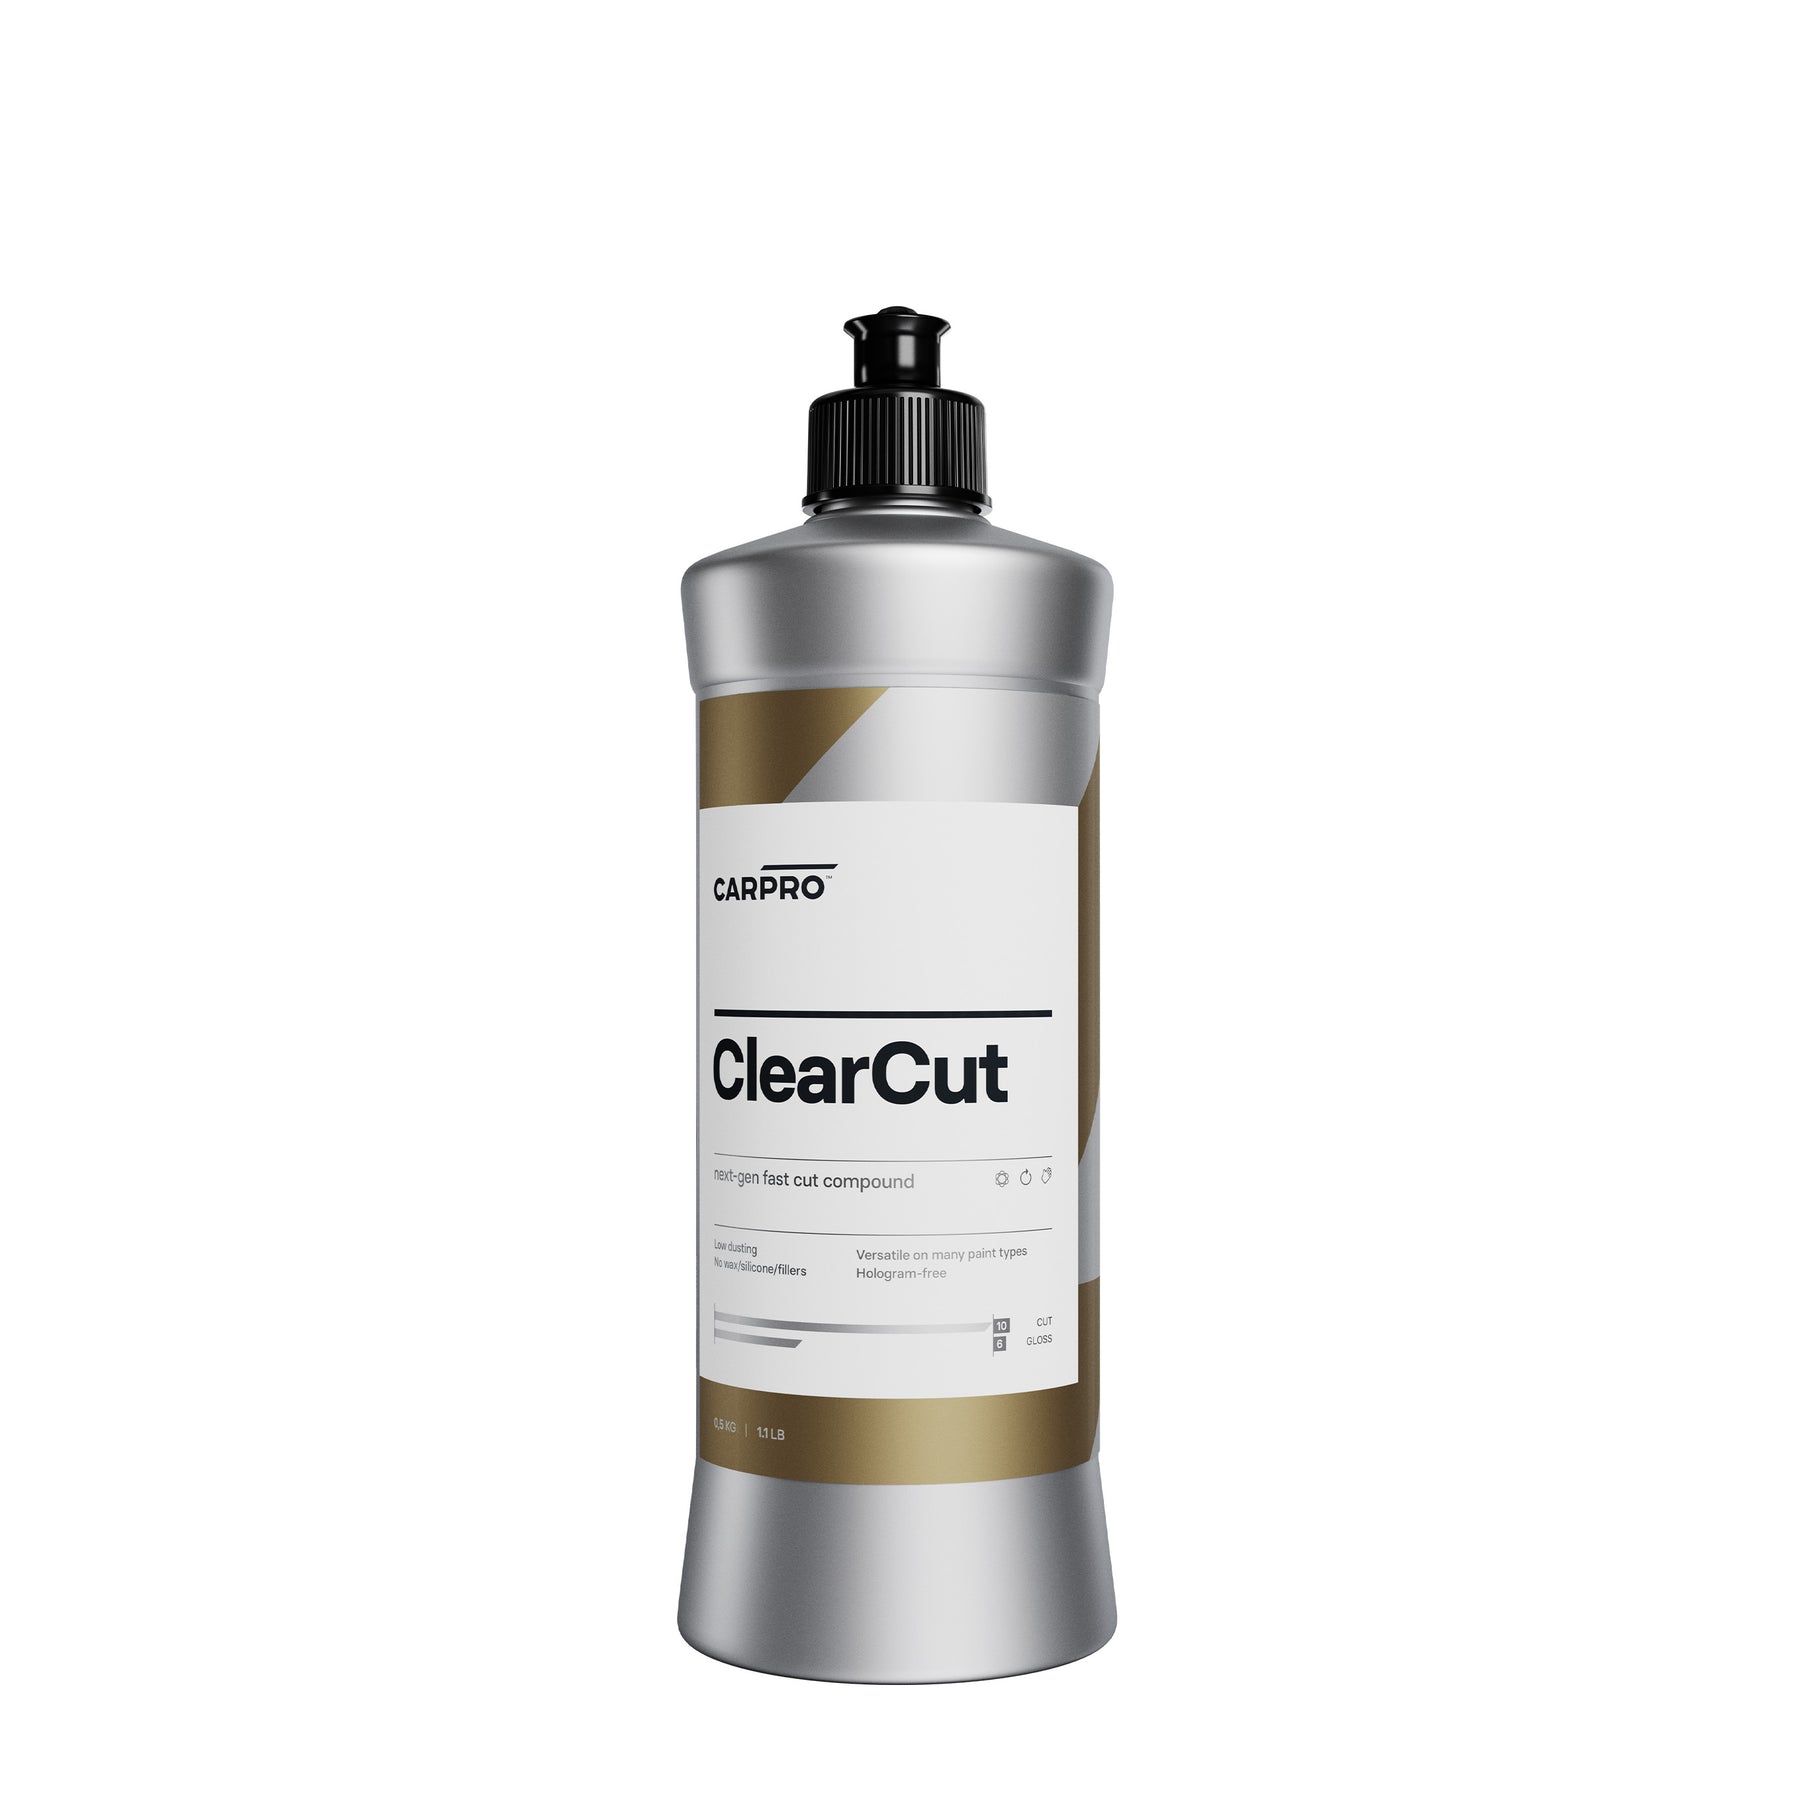  Bottiglia di CARPRO ClearCut su sfondo bianco, perfetta per rimuovere graffi e imperfezioni durante la lucidatura dei veicoli.